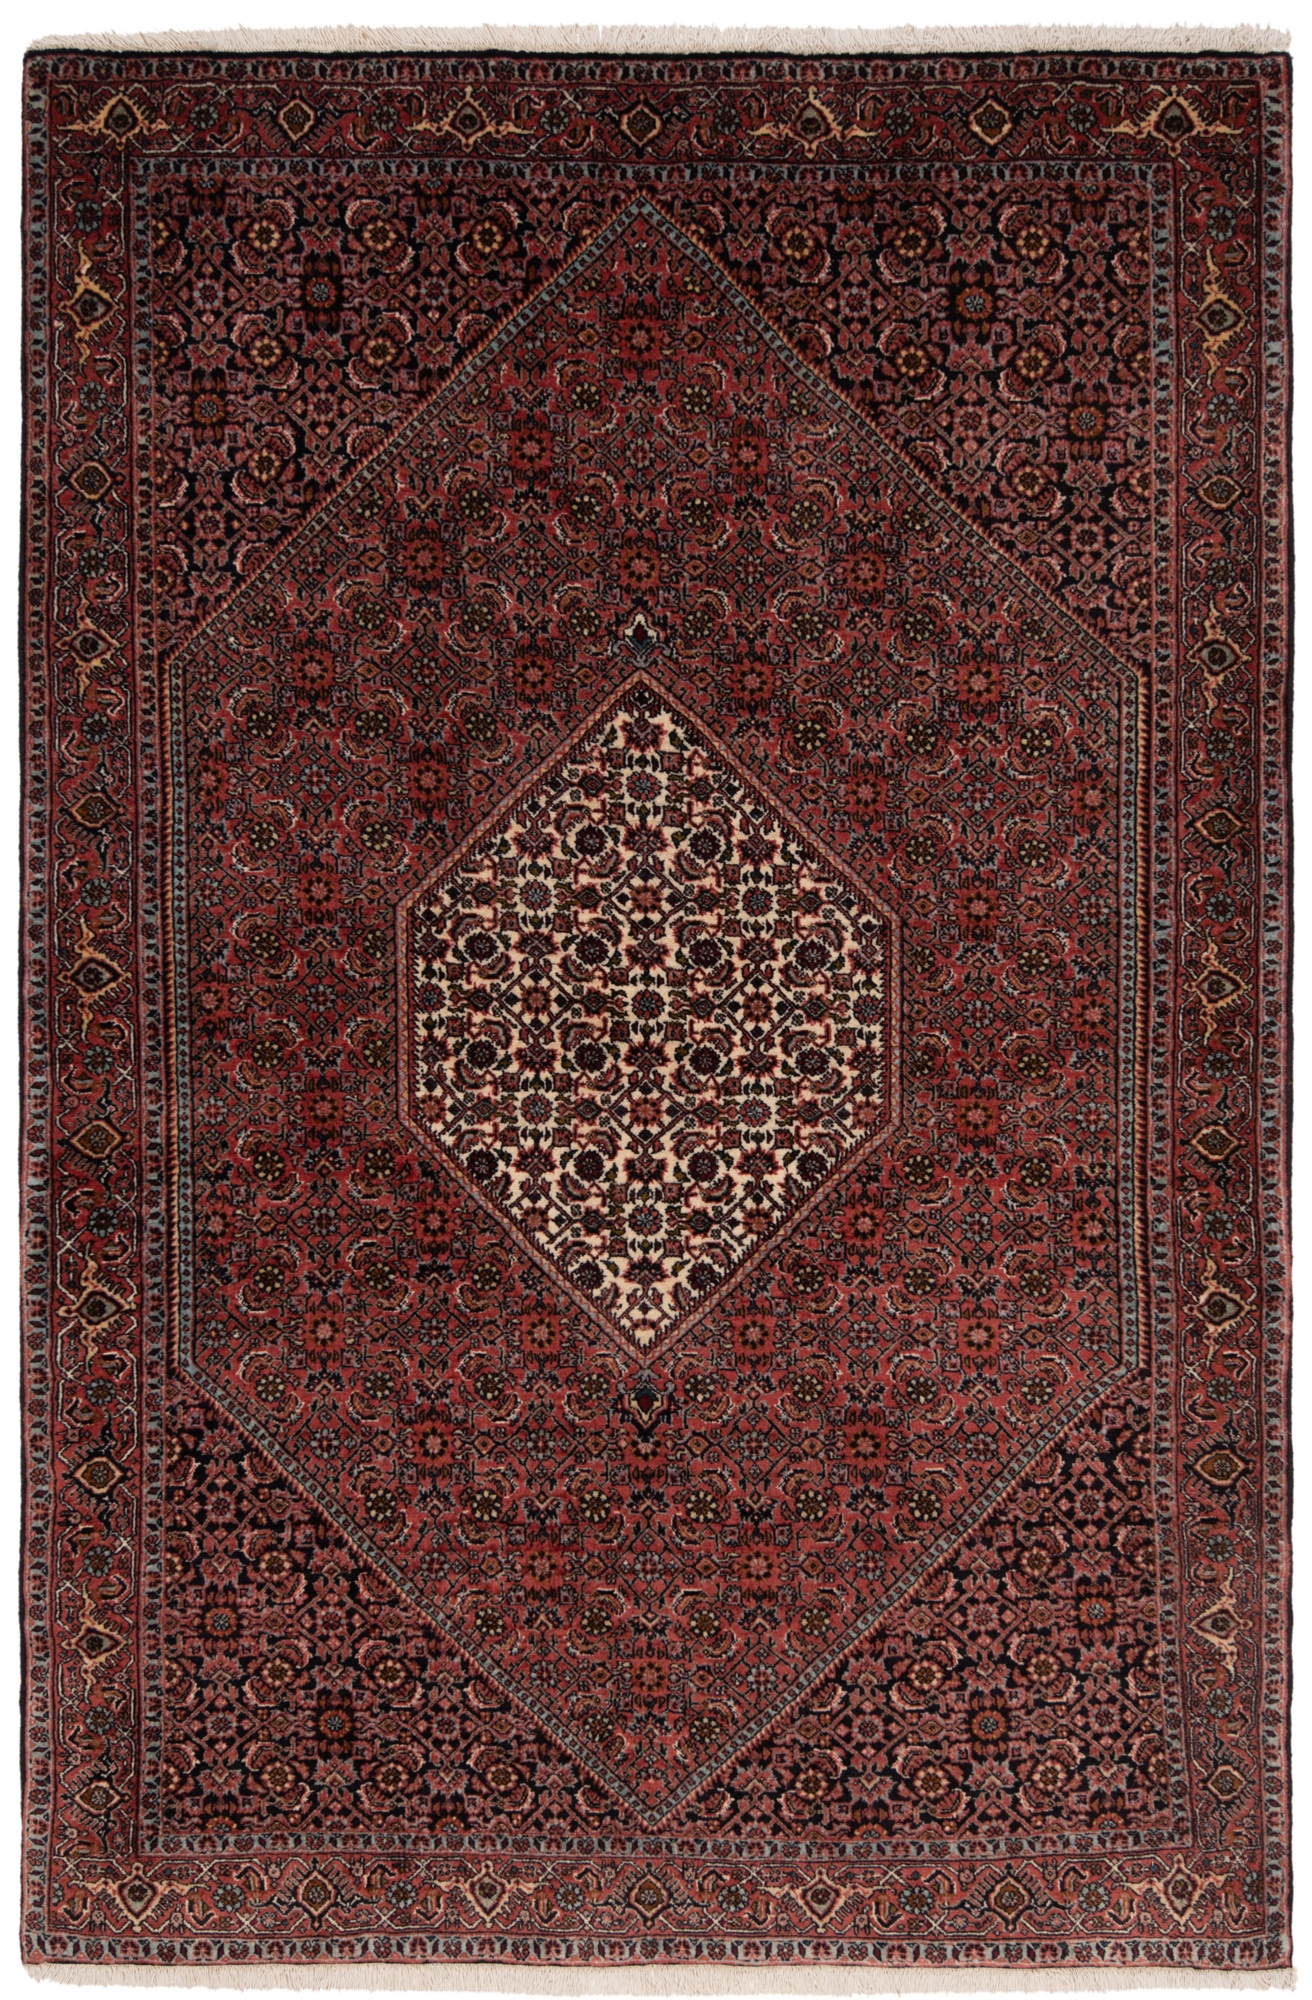 Bidjar Persian Rug Red 175 x 114 cm